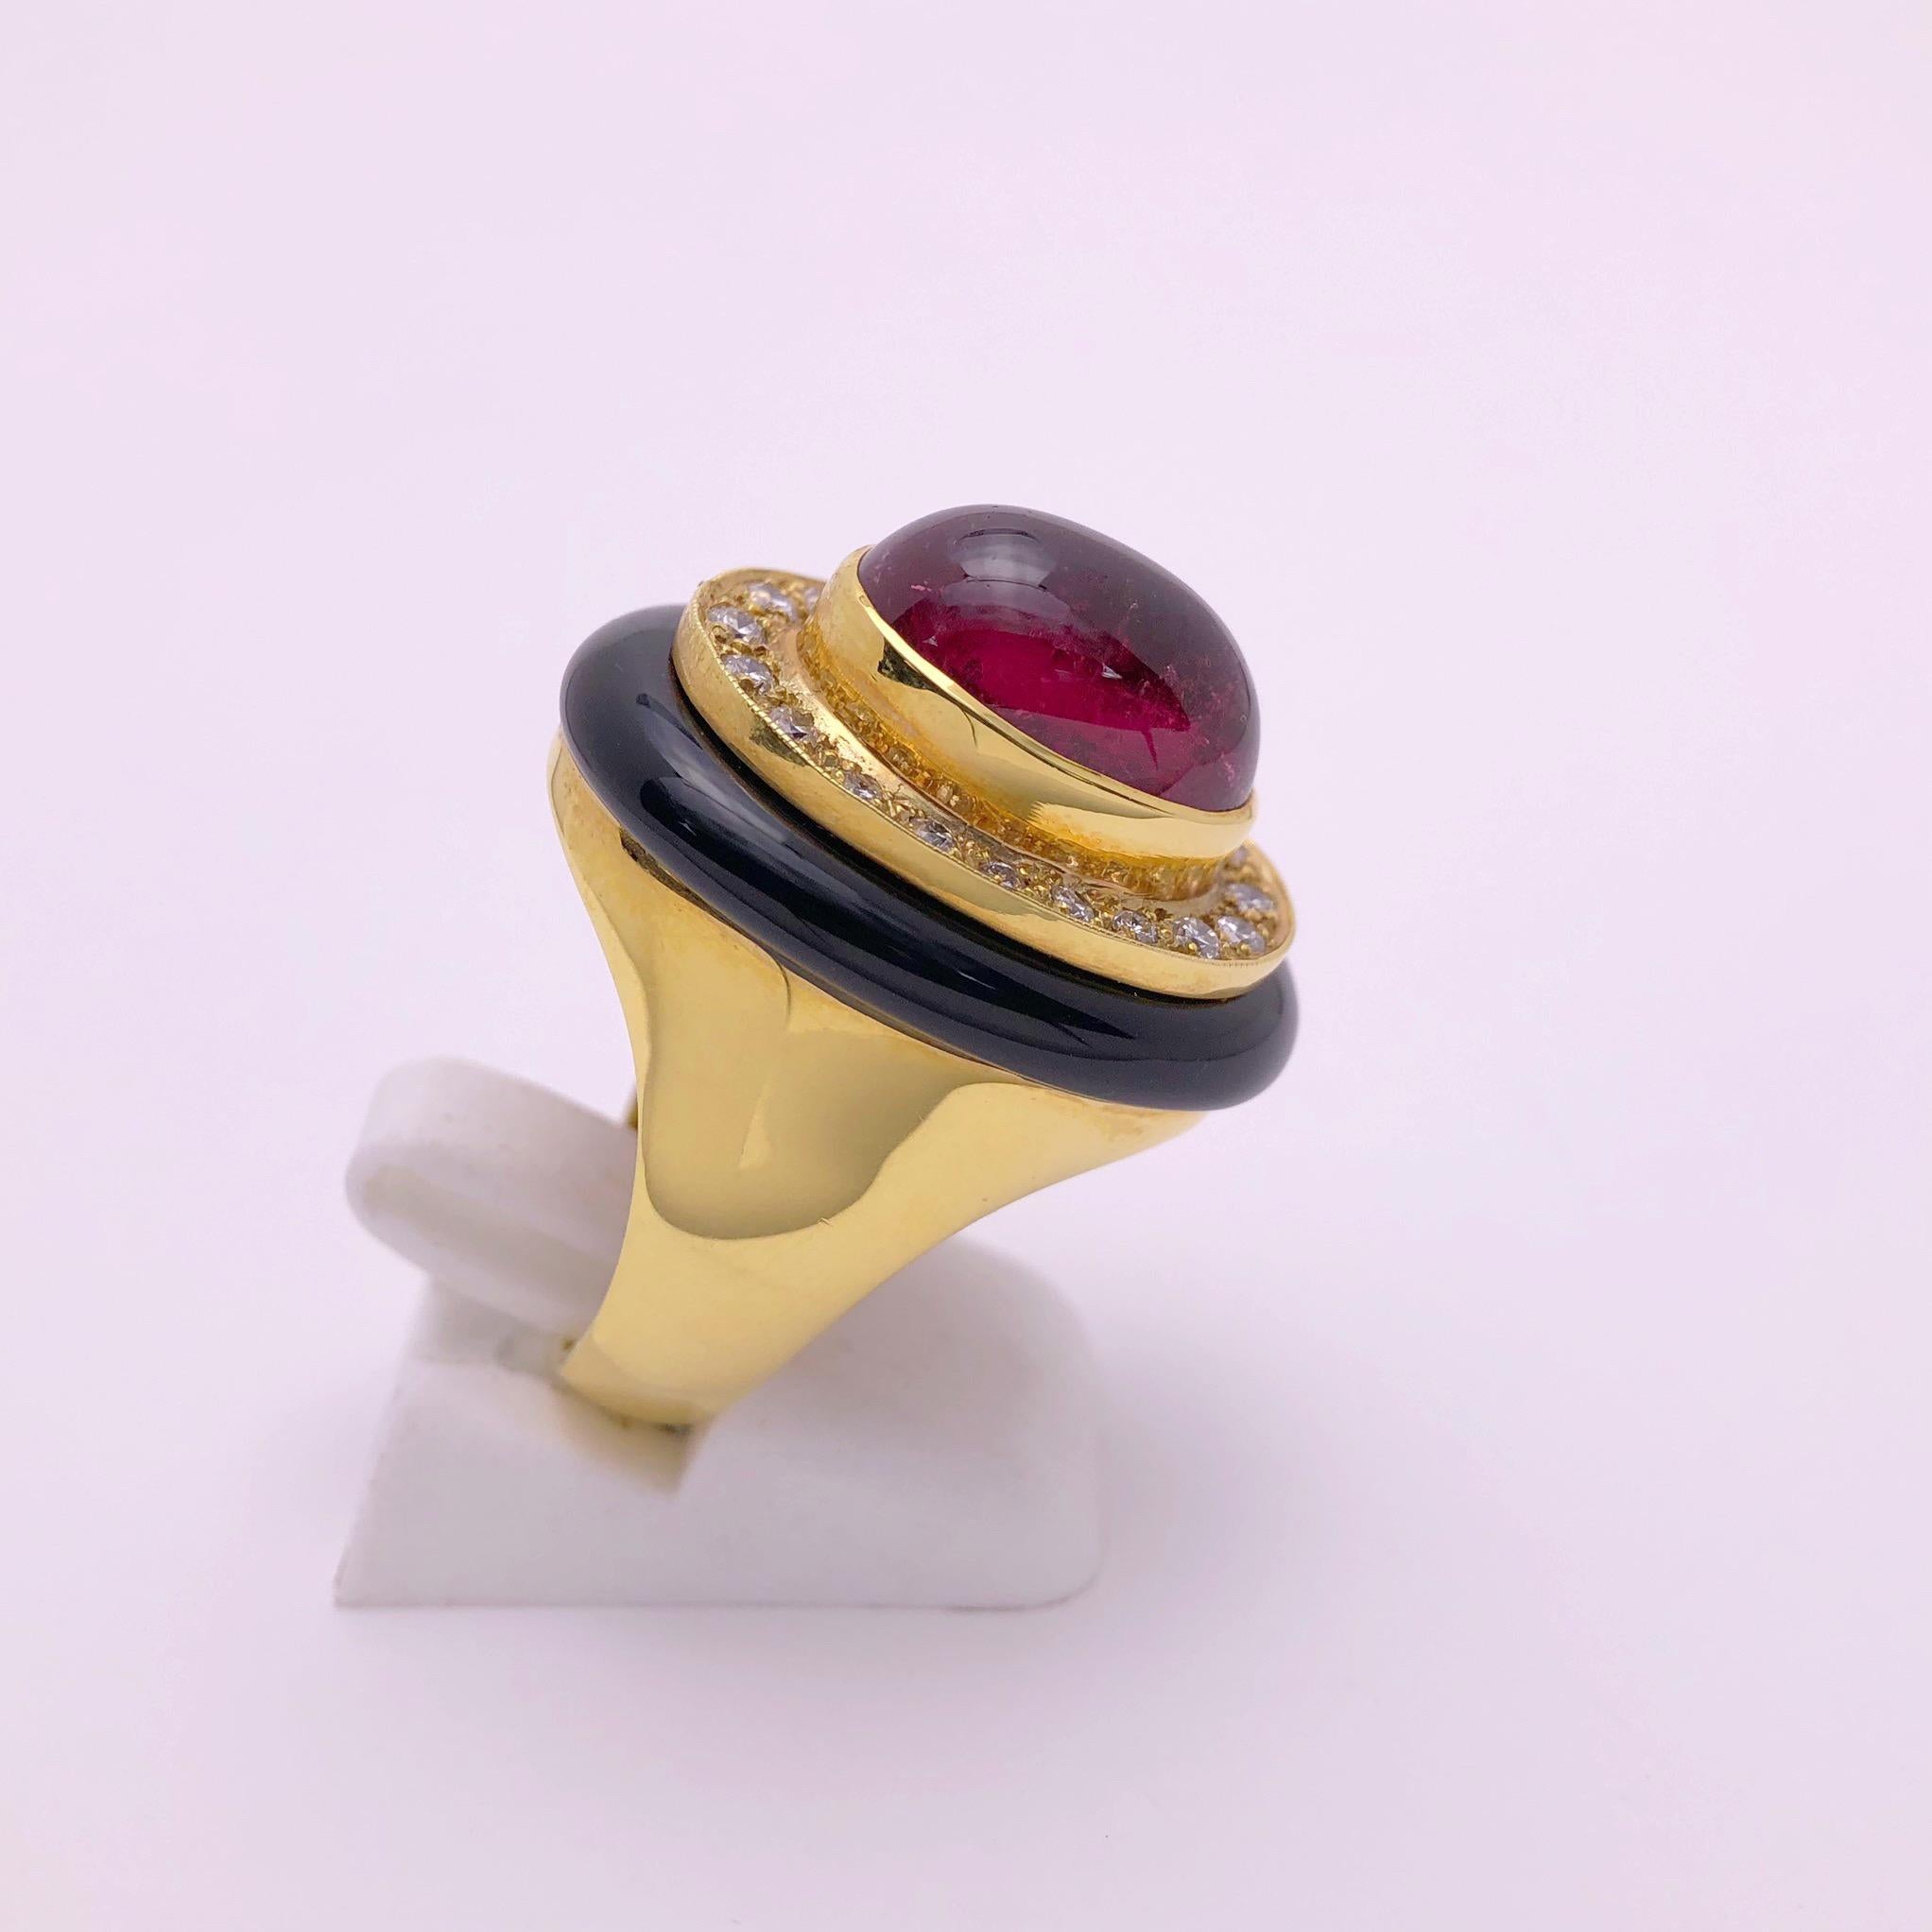 Diese von Lagos gefertigte 18KT Gelbgold  ring zentriert einen ovalen Cabochon aus rosa Turmalin. 20 runde Brillanten umgeben den Turmalin in der Mitte, und ein Ring aus schwarzem Onyx umgibt die Diamanten. Der Schaft des Rings ist aus